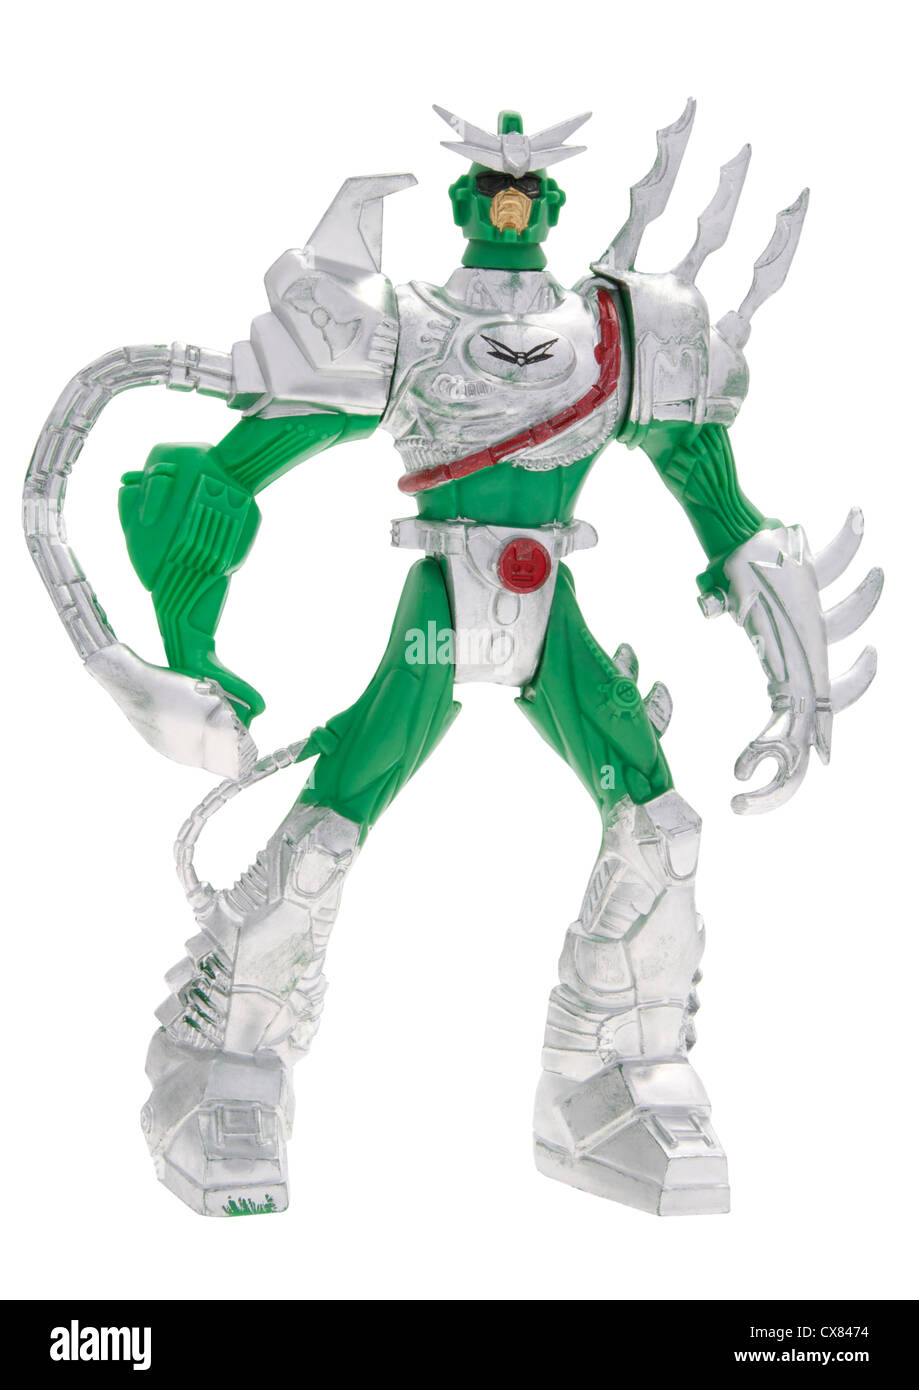 Fantaisie en plastique jouet robot action figure sur fond blanc Banque D'Images